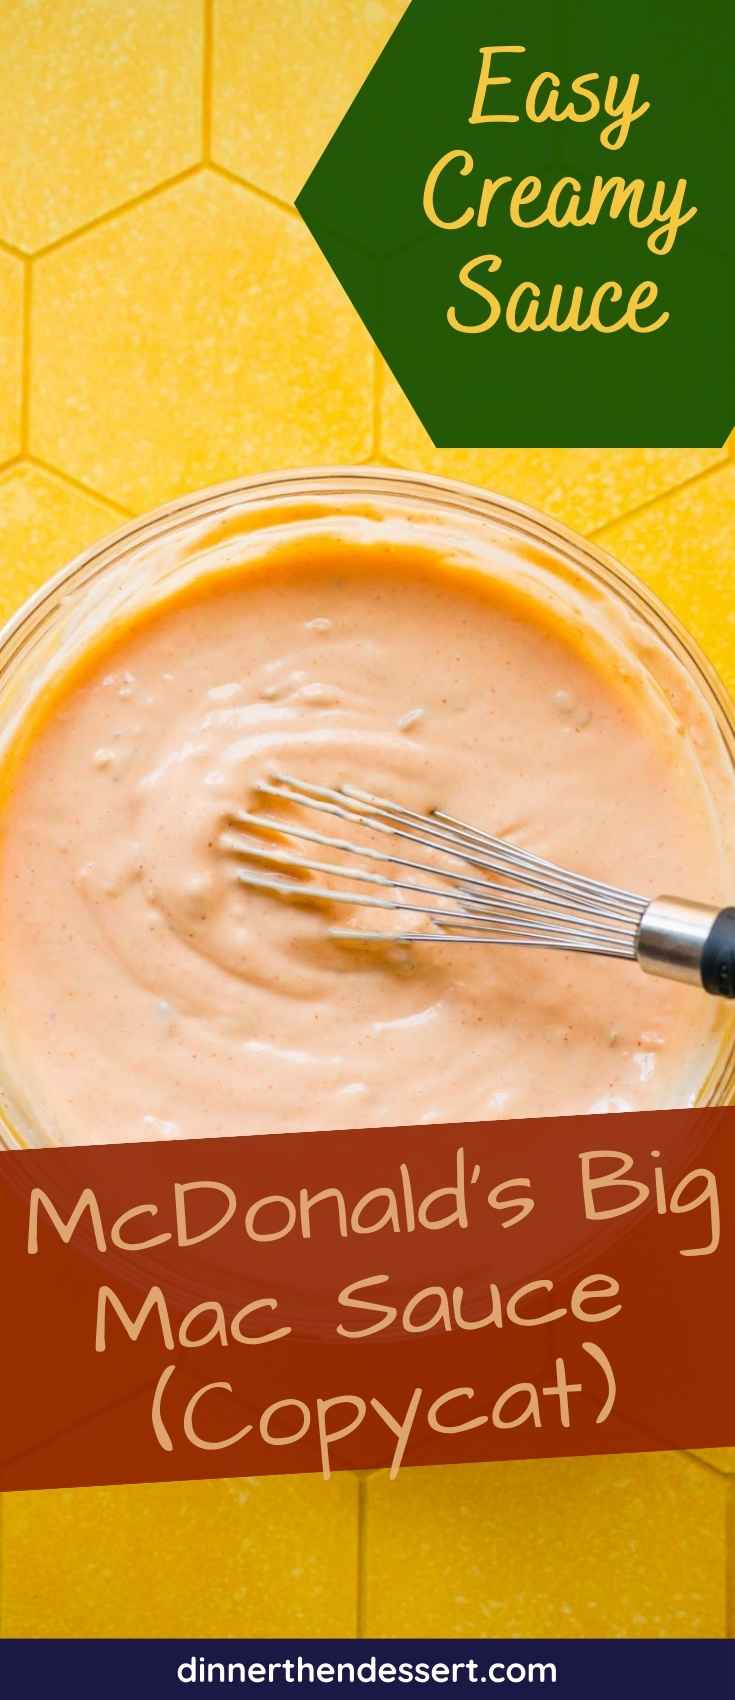 McDonald's Big Mac Sauce Copycat Pin 1